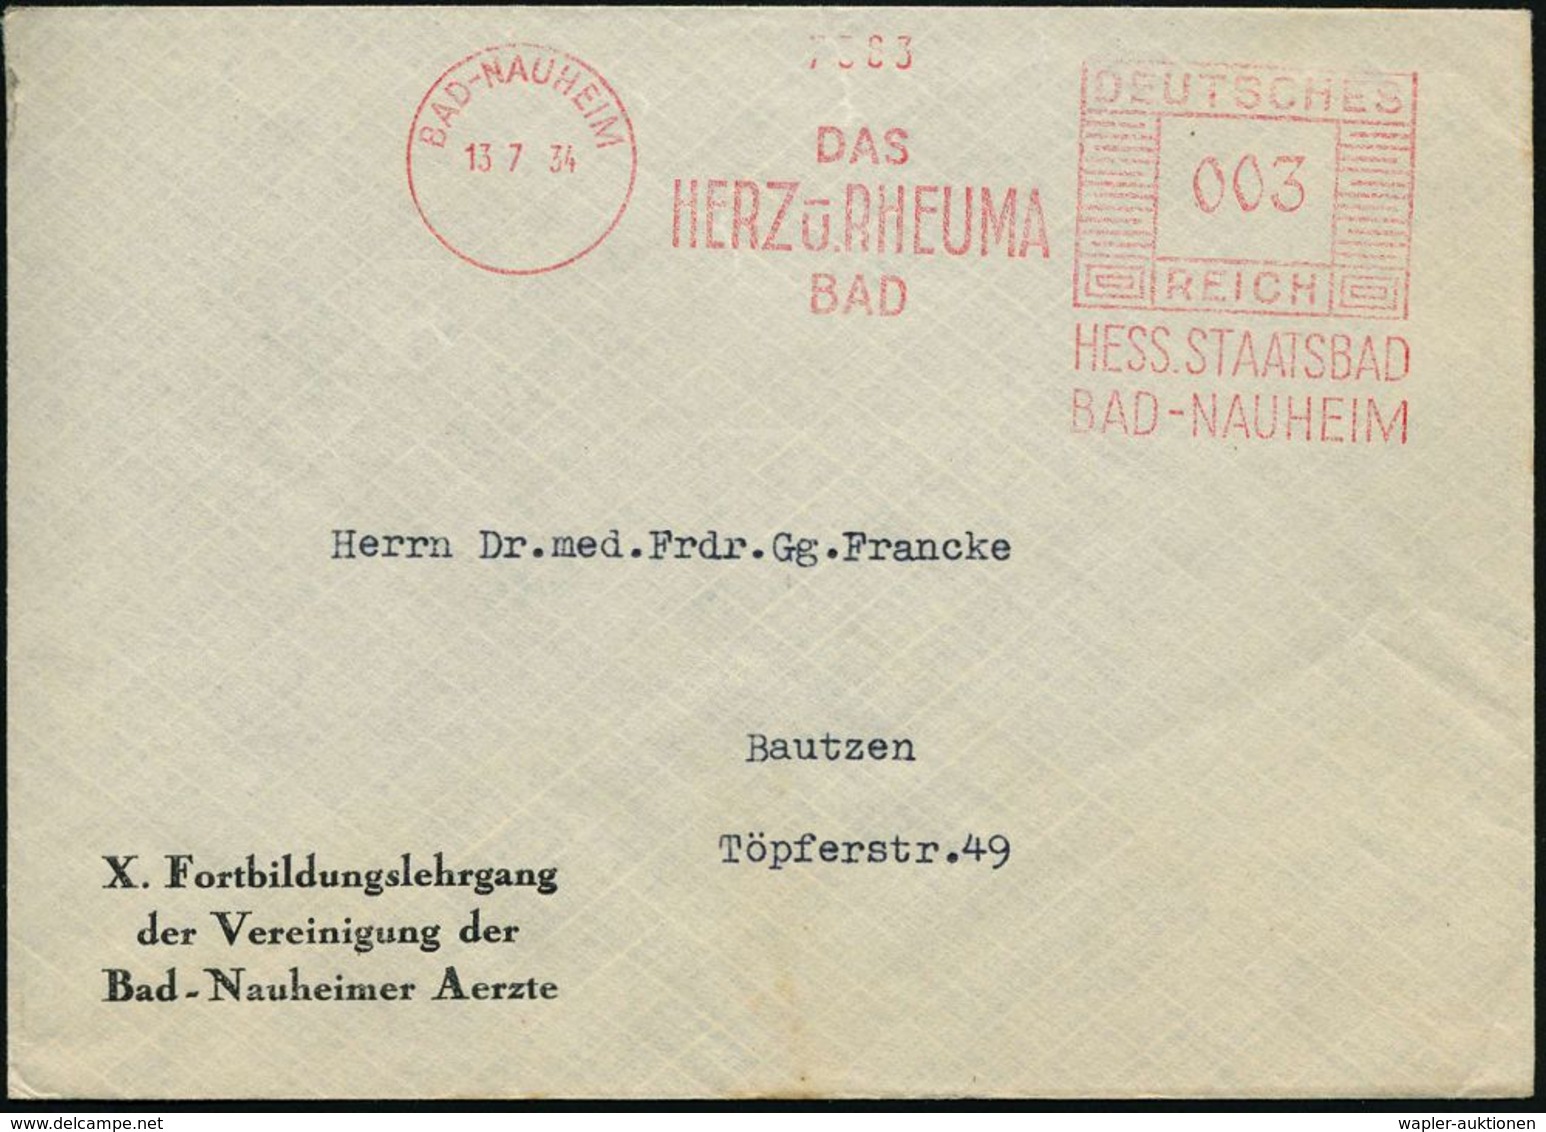 RHEUMATISMUS : BAD-NAUHEIM/ DAS/ HERZ U.RHEUMA/ BAD/ HESS.STAATSBAD.. 1934 (13.7.) AFS Auf Vordruck-Bf.: X. Fortbildungs - Maladies